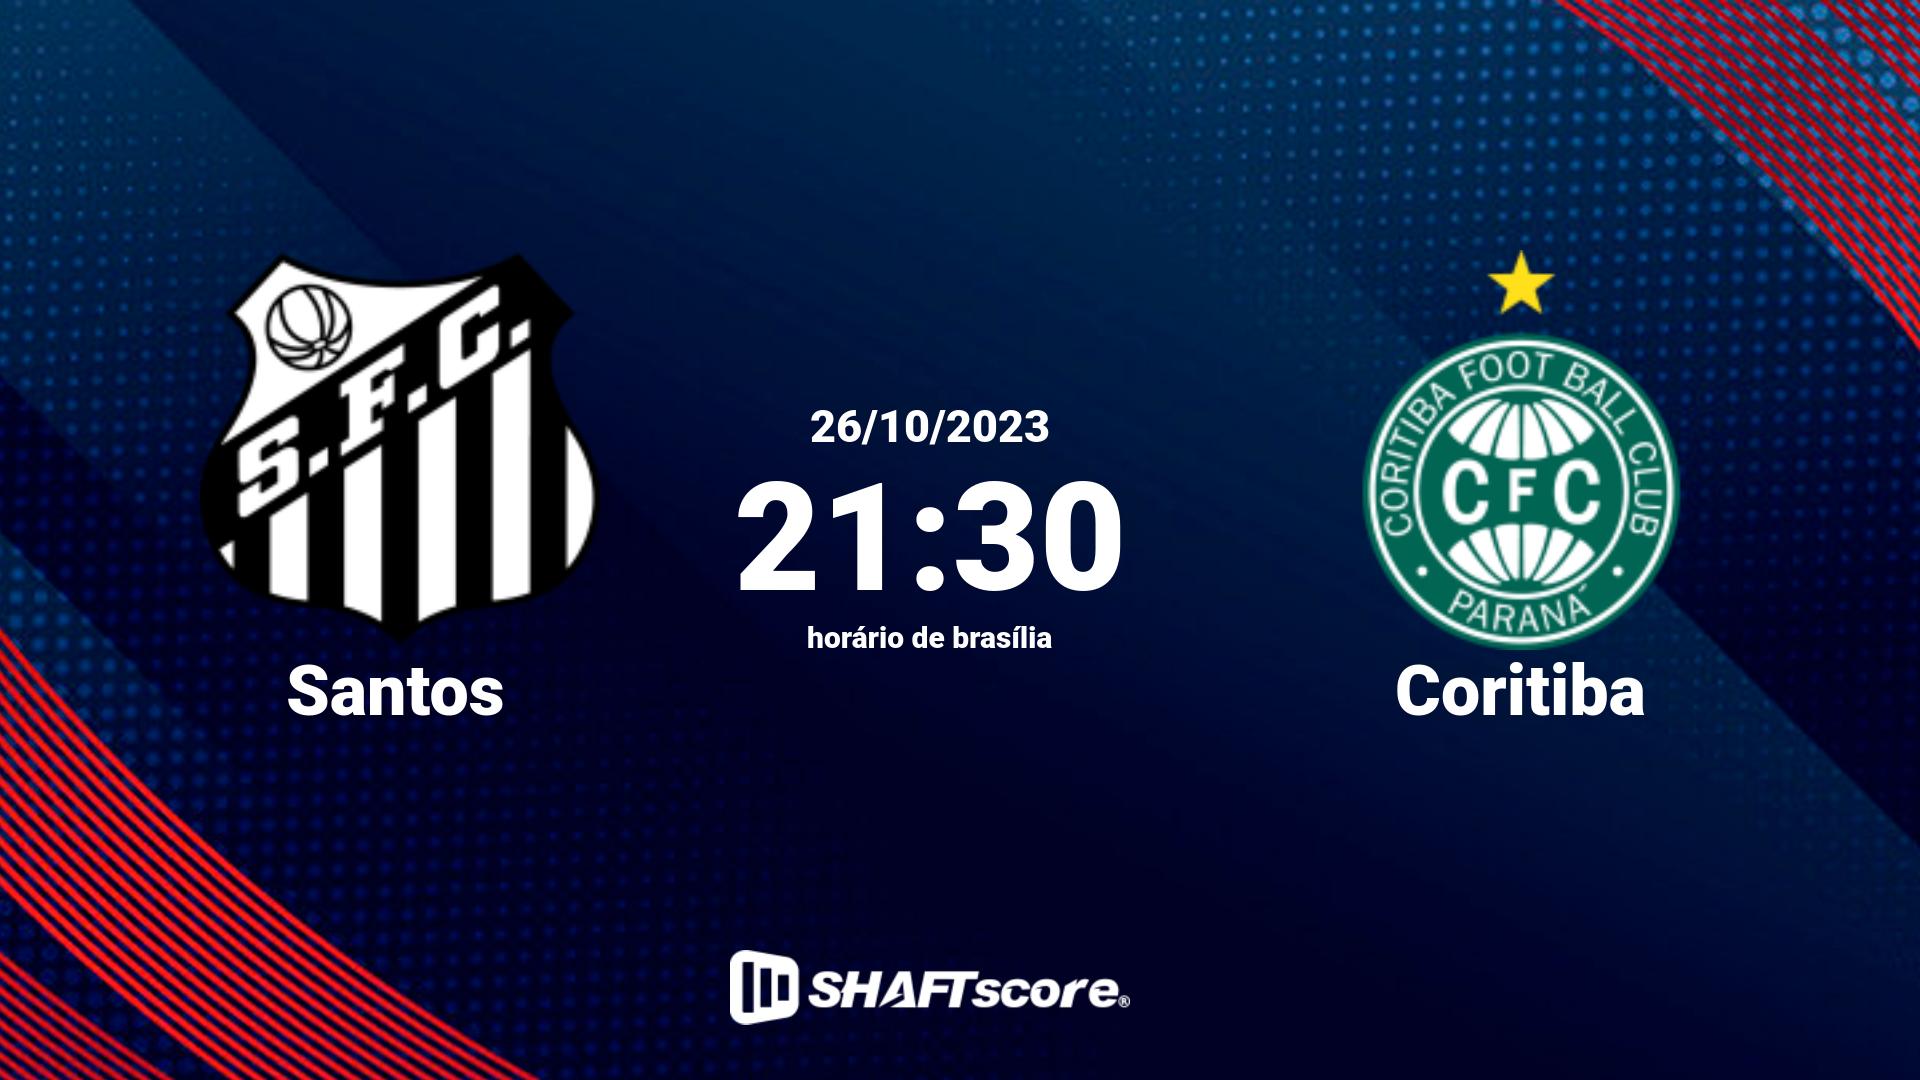 Estatísticas do jogo Santos vs Coritiba 26.10 21:30